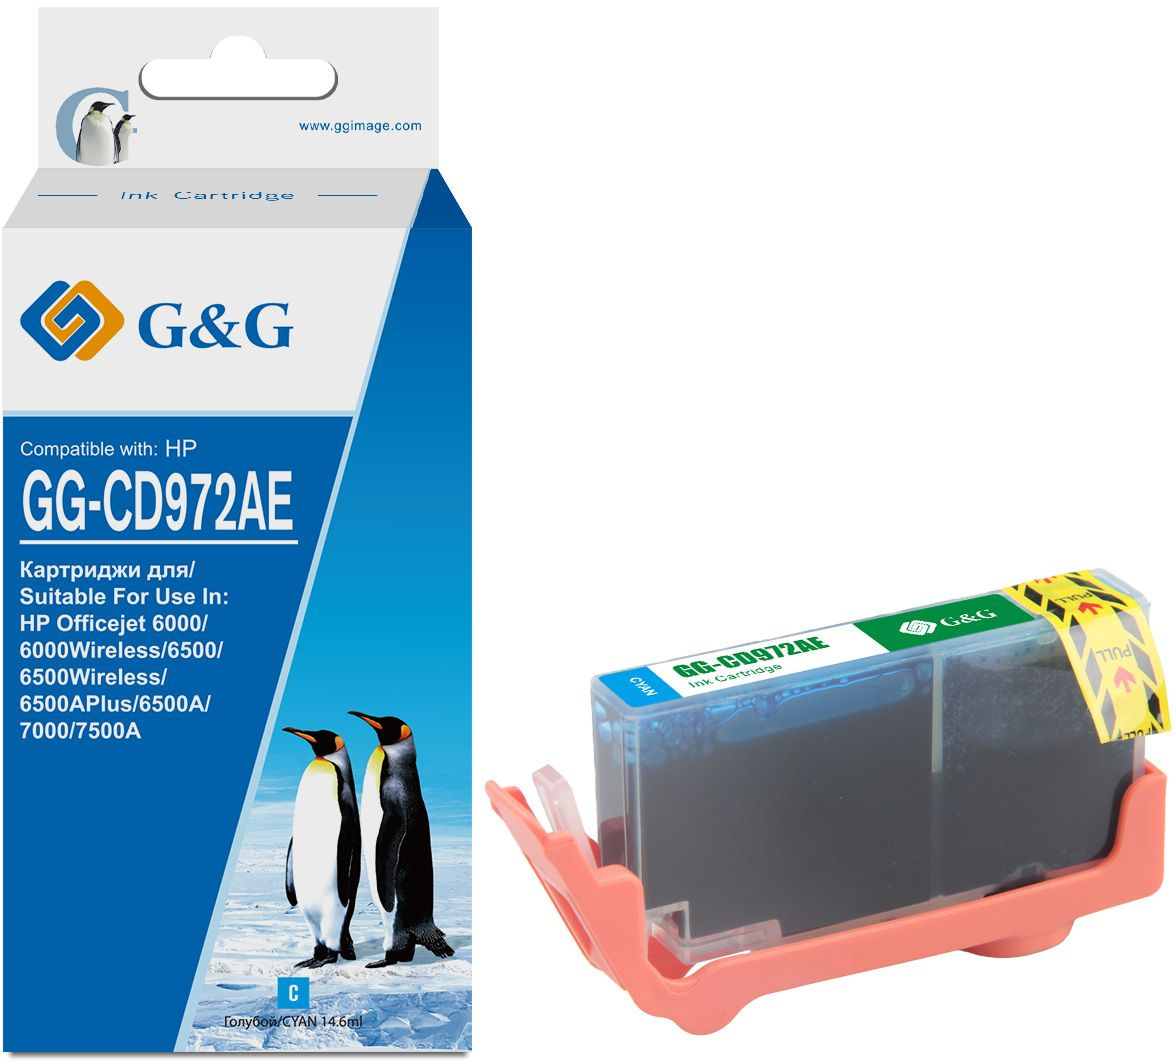  G&G GG-CD972AE,  / GG-CD972AE